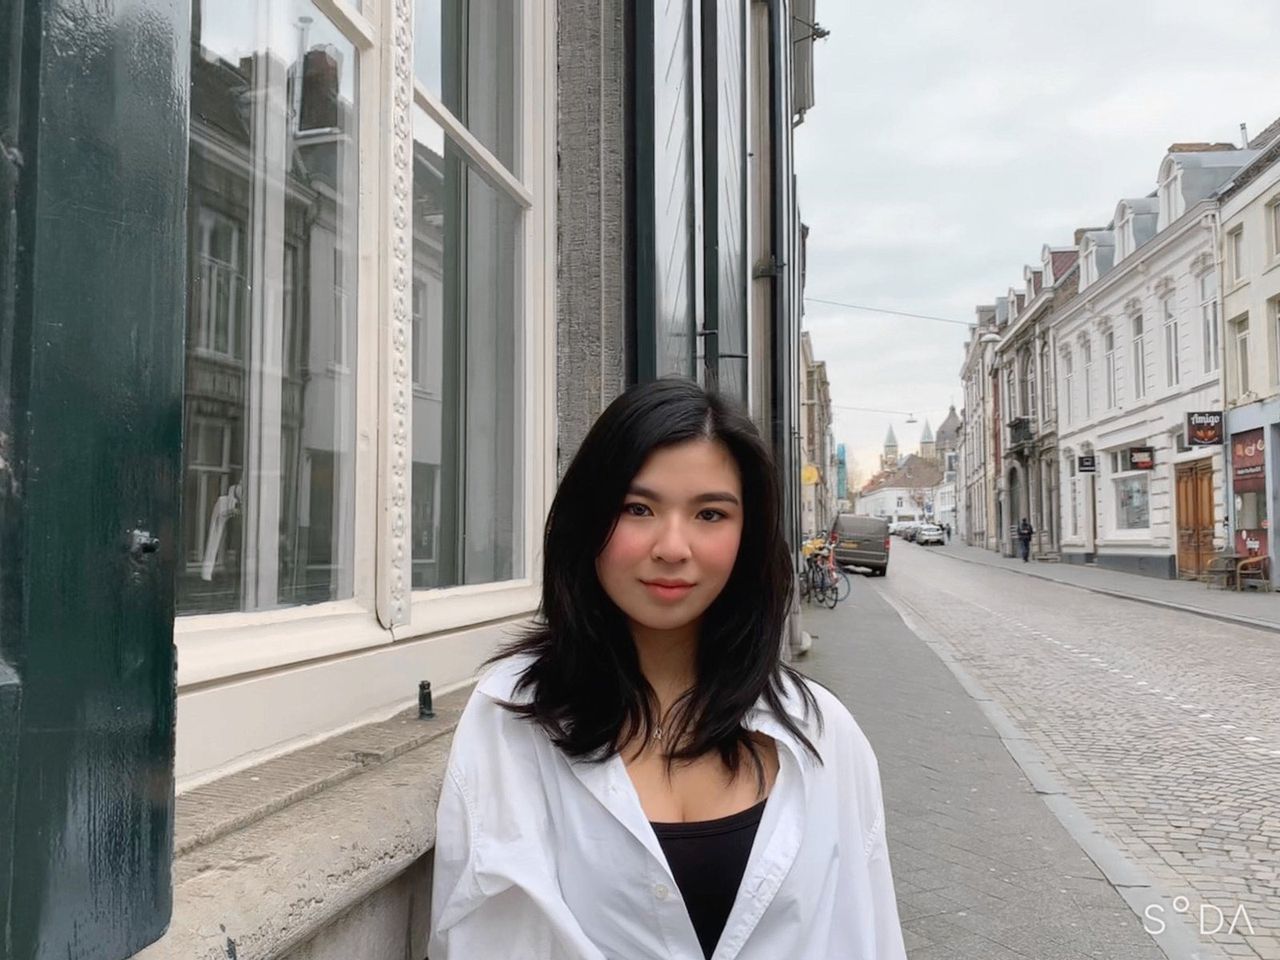 Na de problemen met de diploma’s in 2018 bij de VMBO Maastricht, loopt Justine Yuan tegen nieuwe obstakels aan vlak voor haar havo-examen: de gevolgen van het coronavirus.